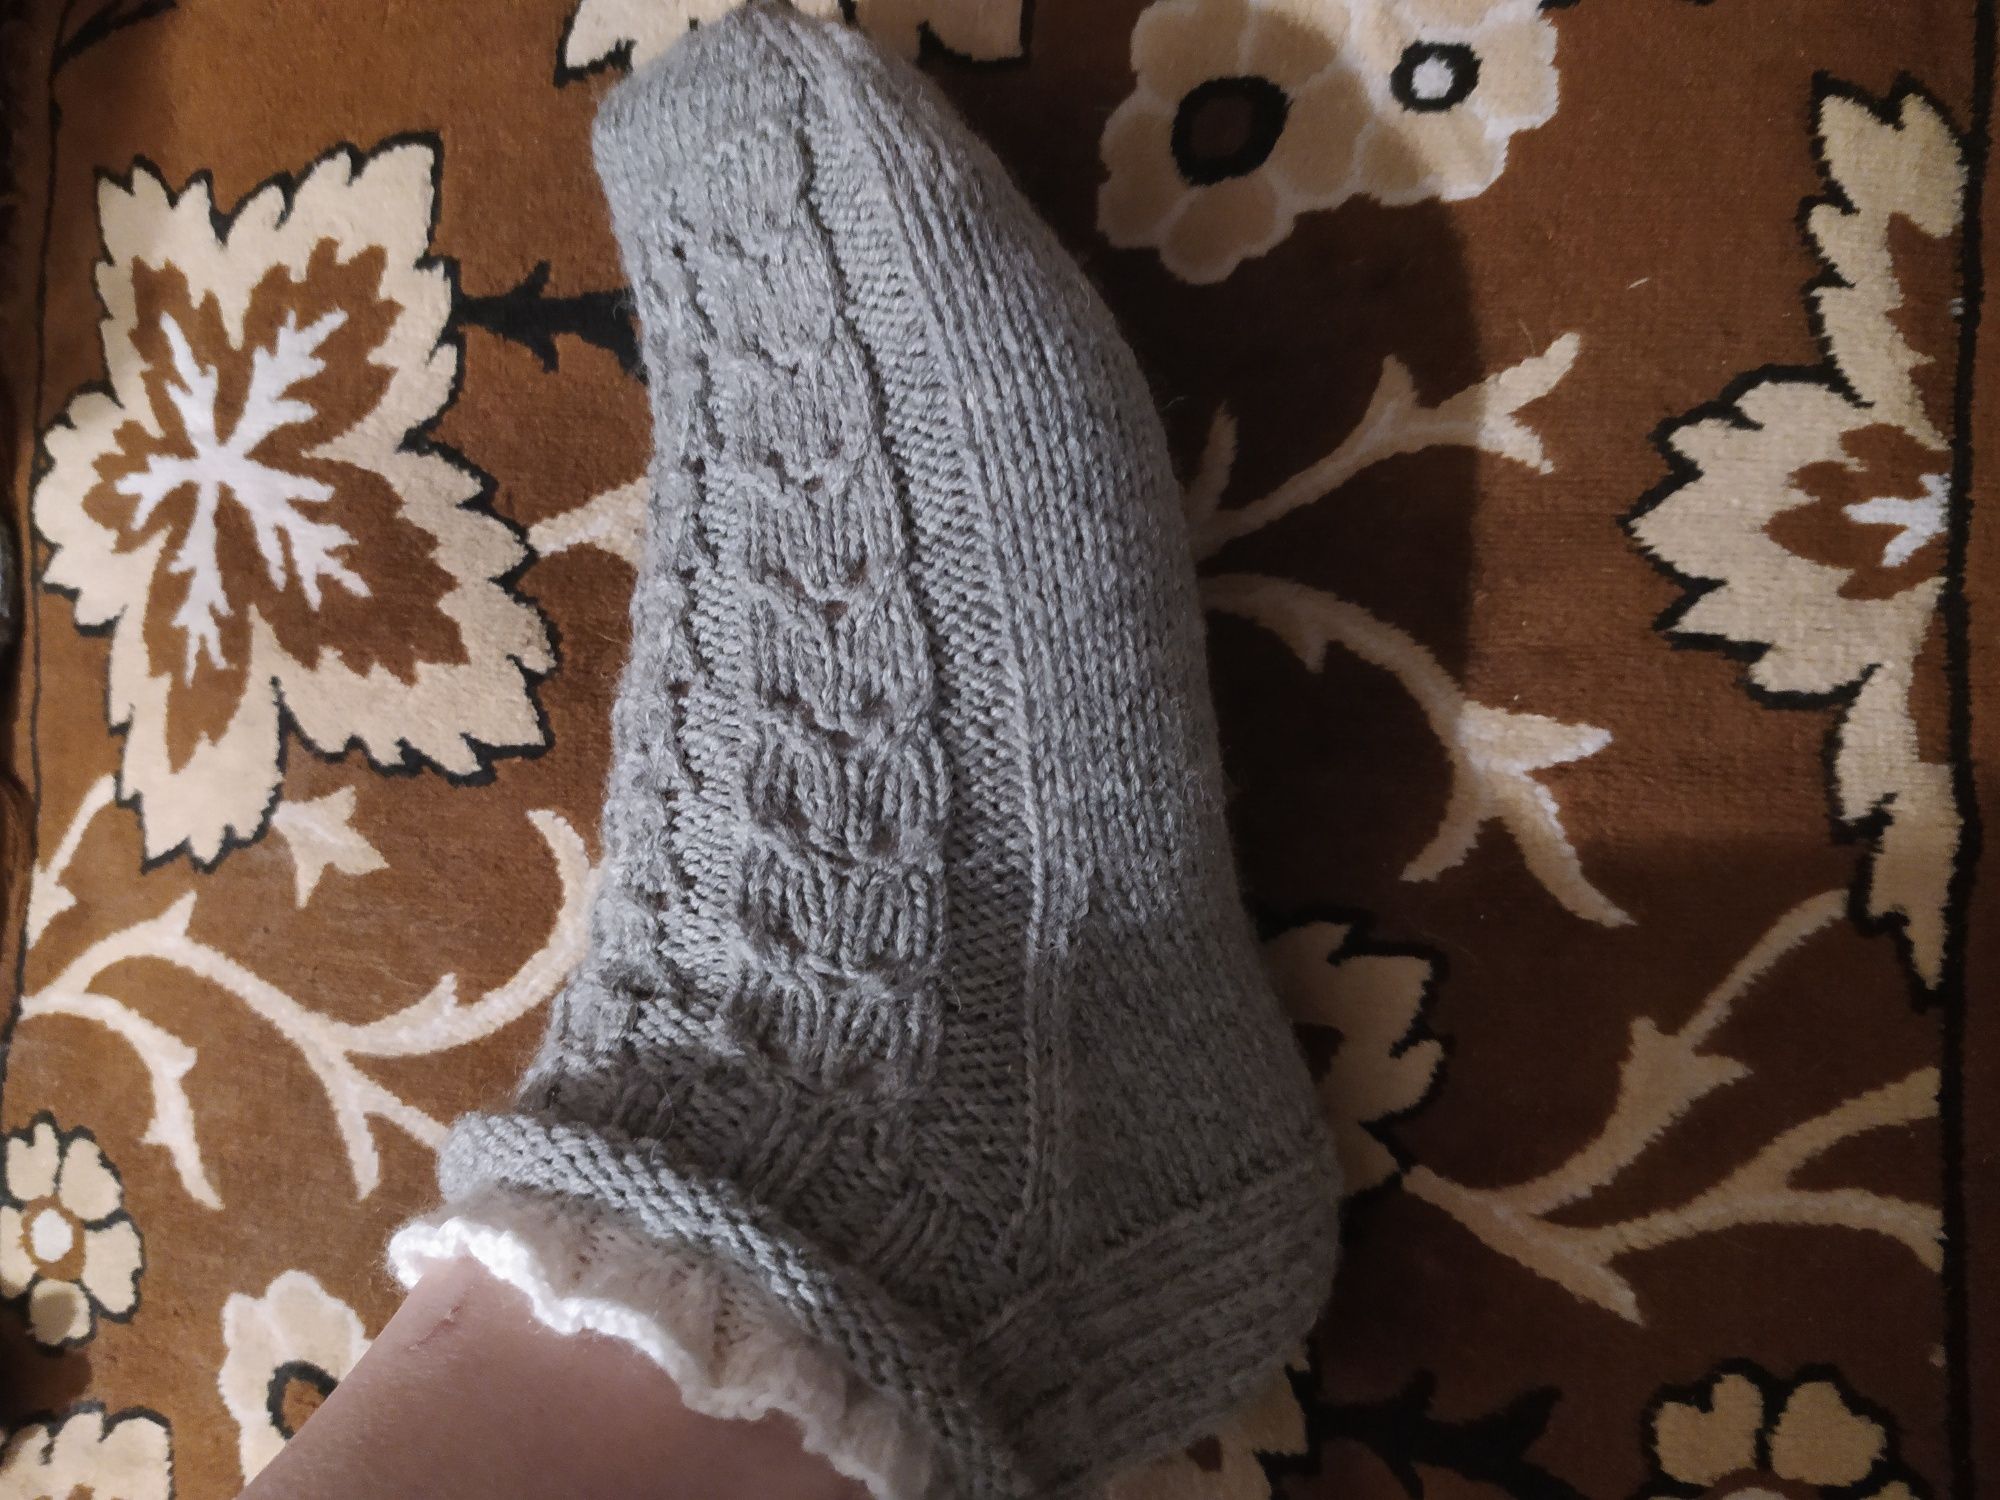 Вязаные ажурные носки